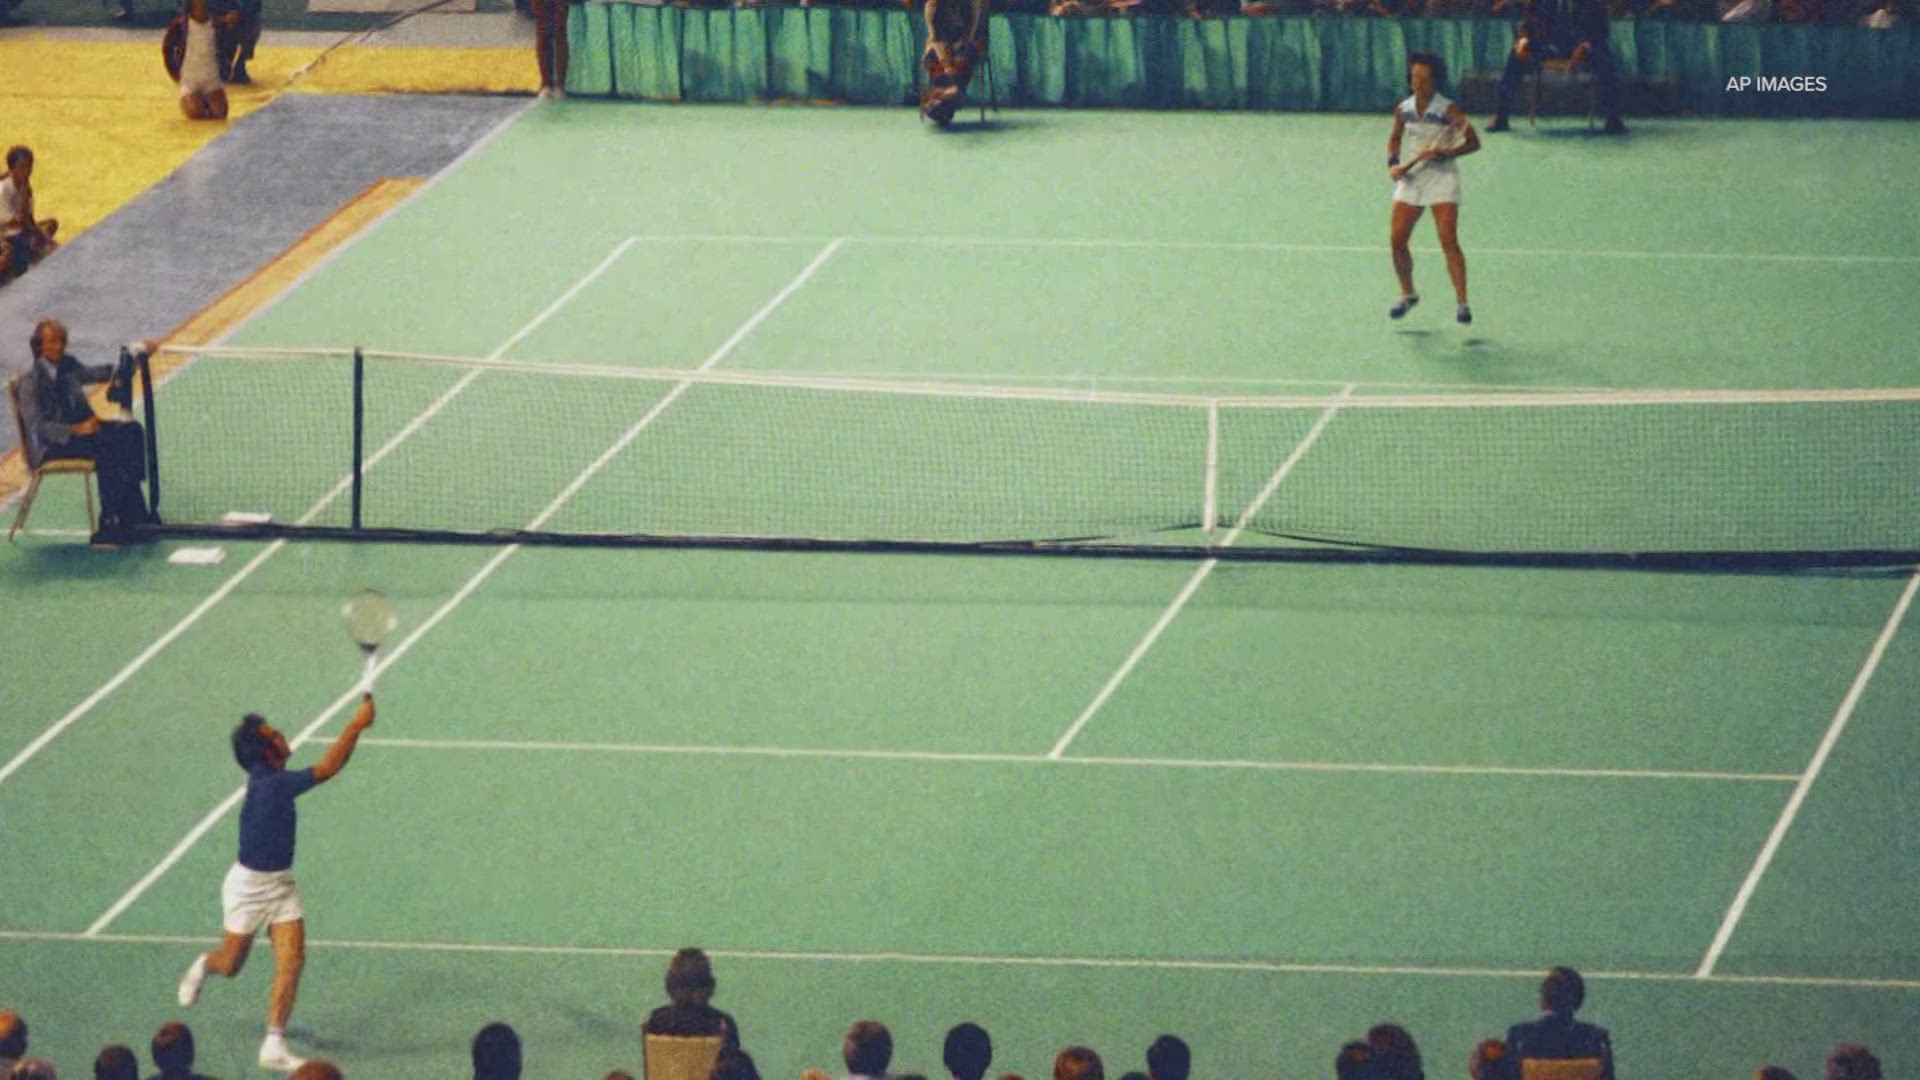 Battle of the Sexes Tennis Match